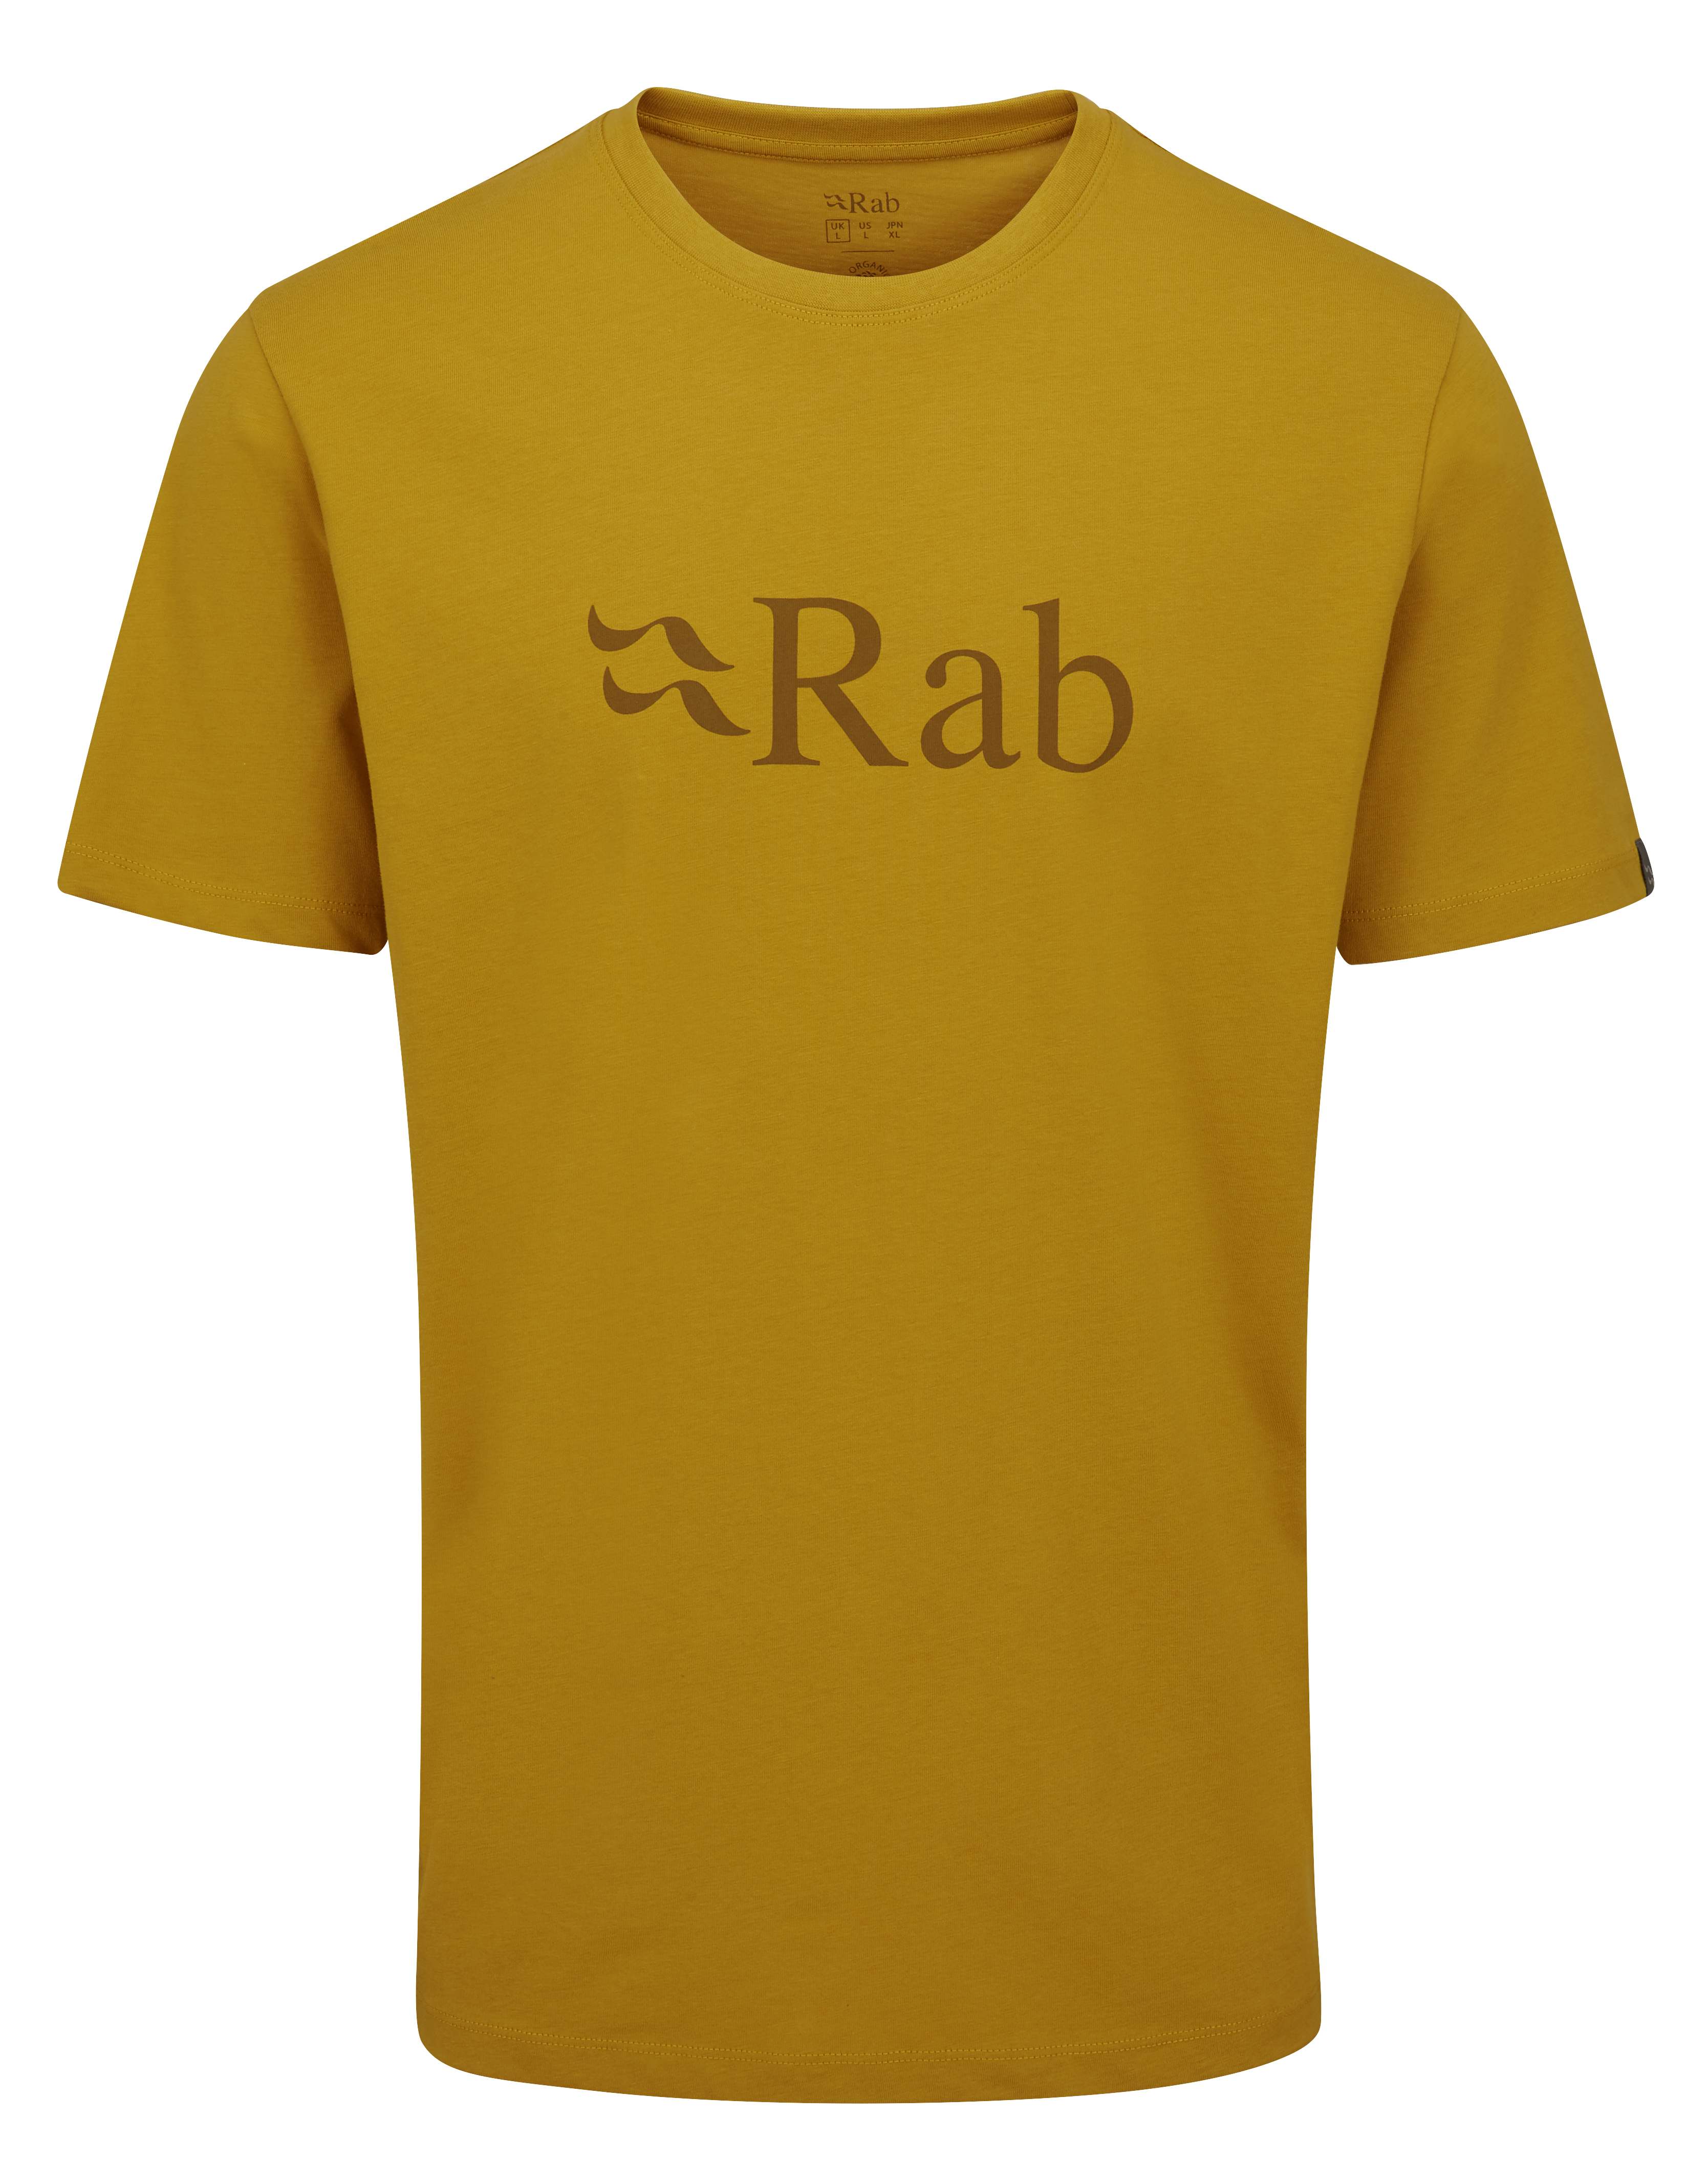 Rab - Stance Logo SS Tee - T-shirt - Uomo